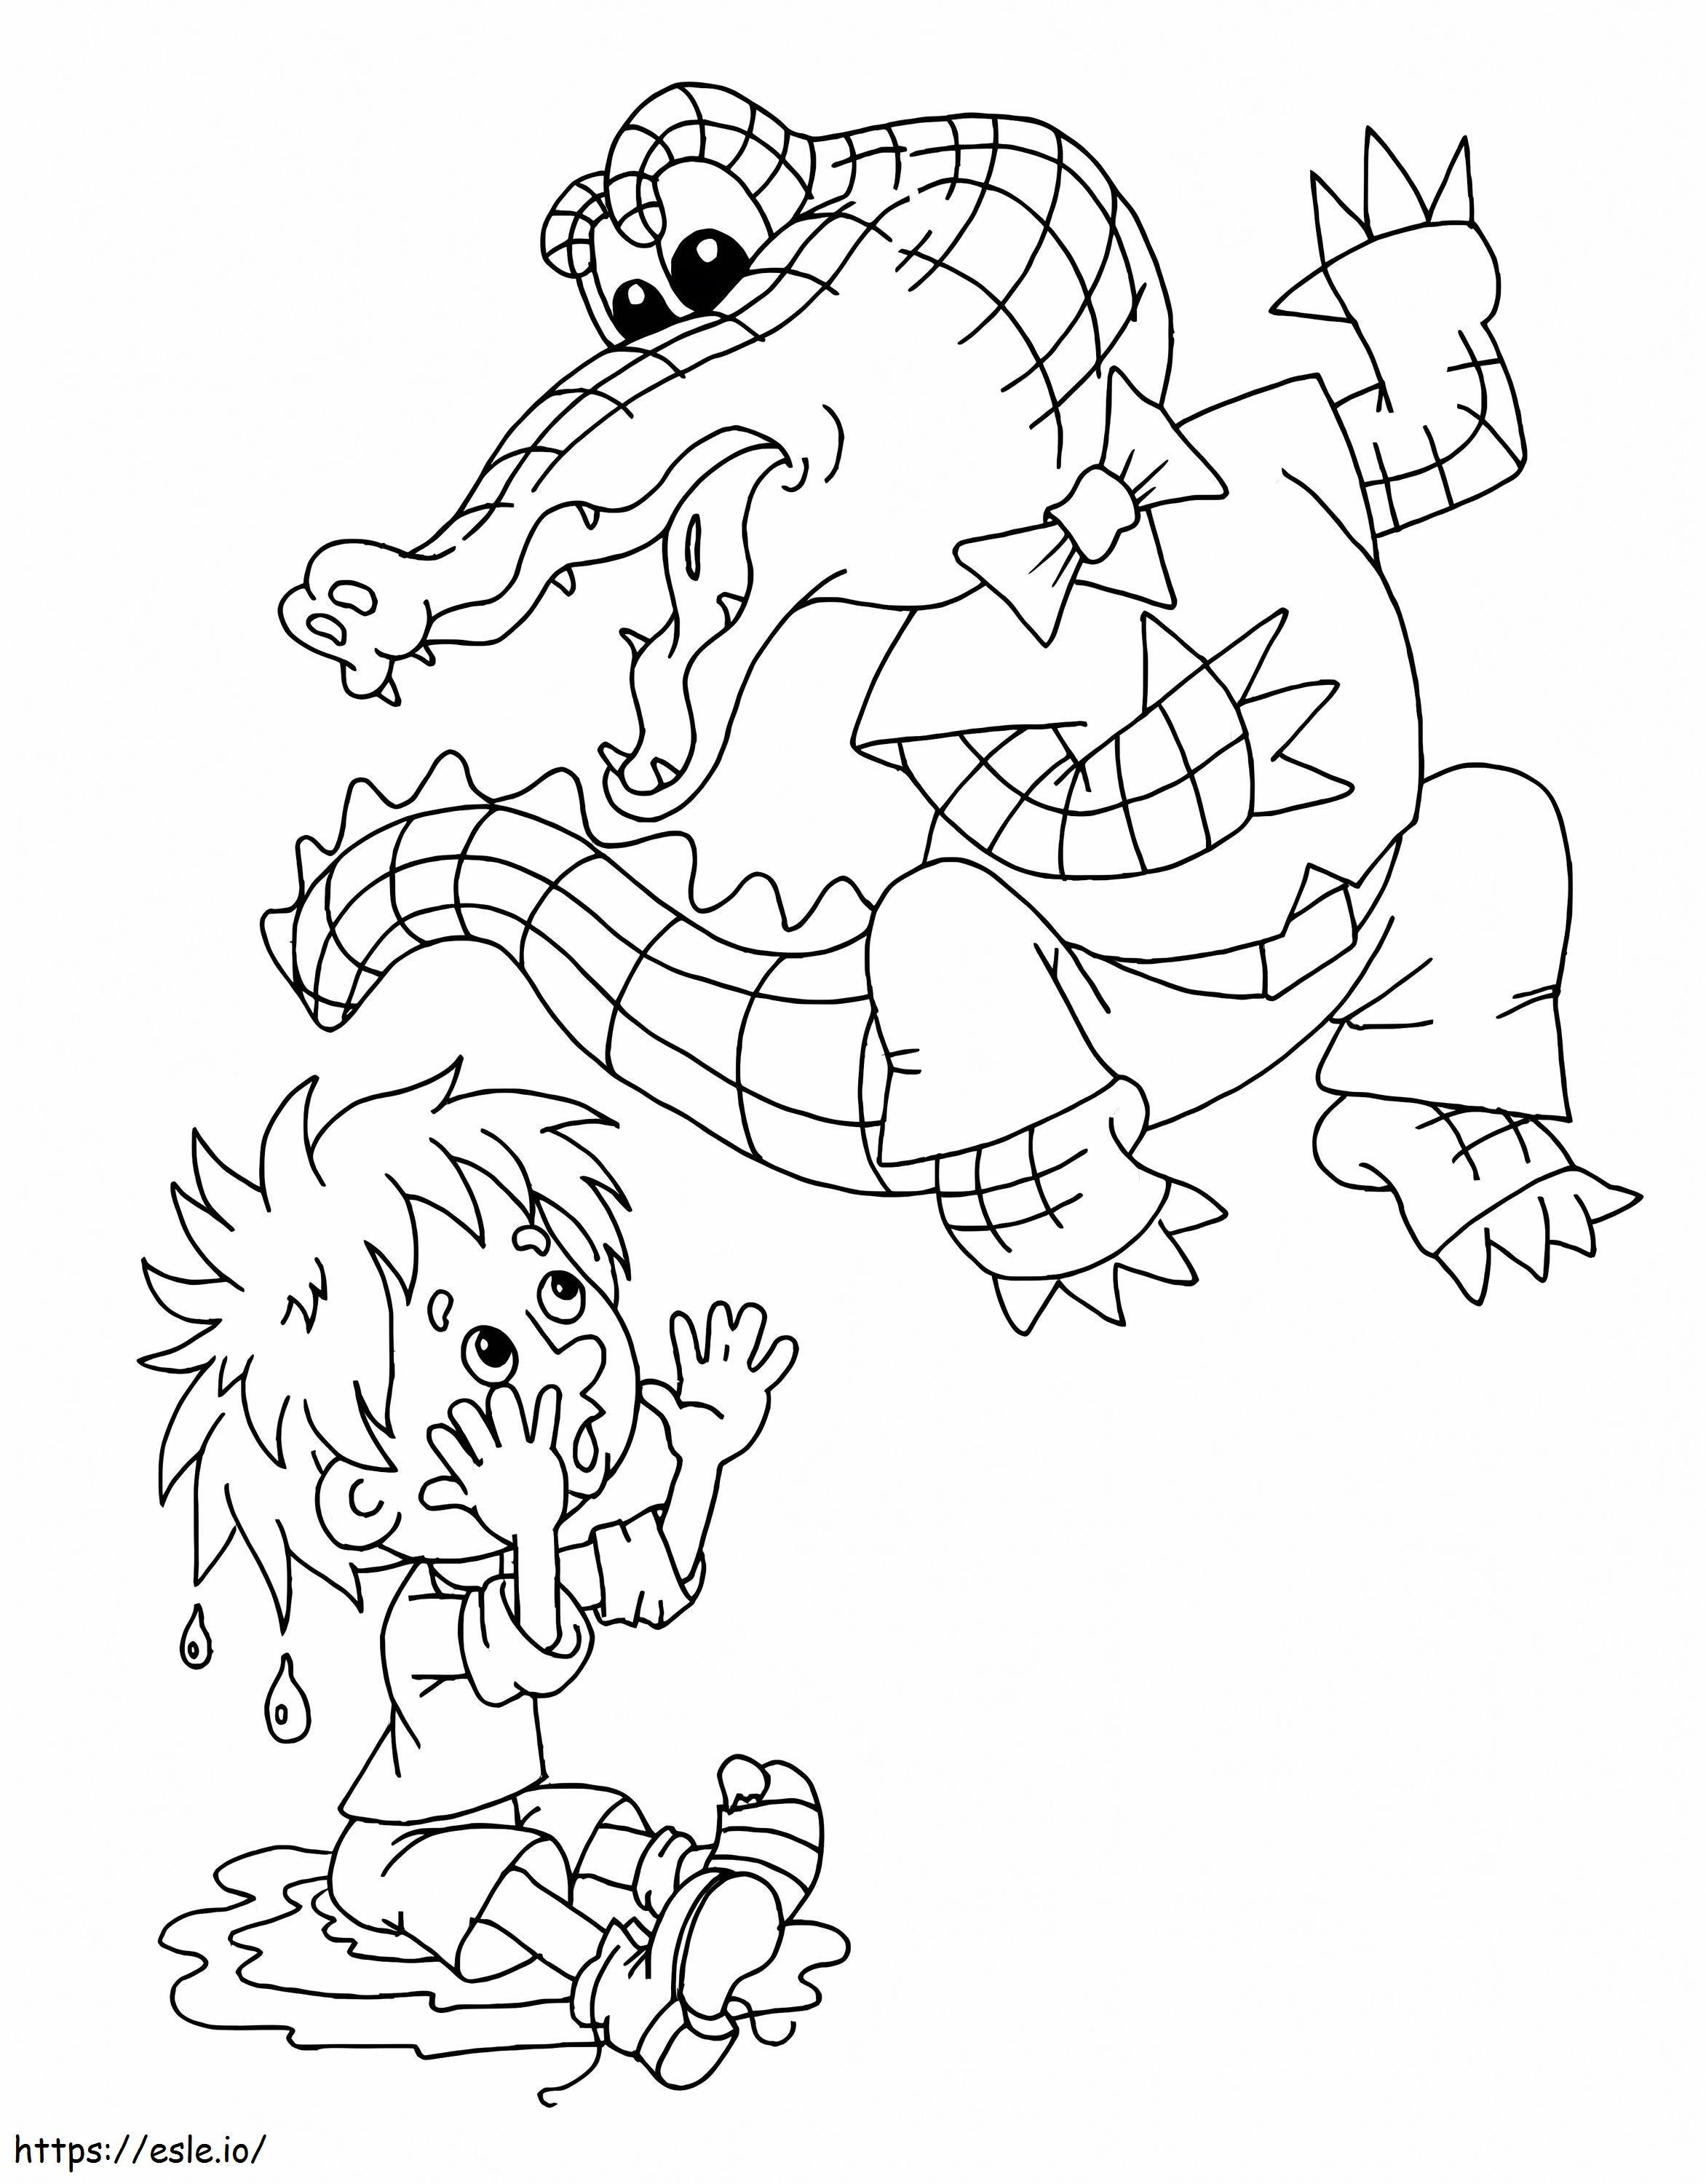 Cartoon Crocodile And Boy coloring page